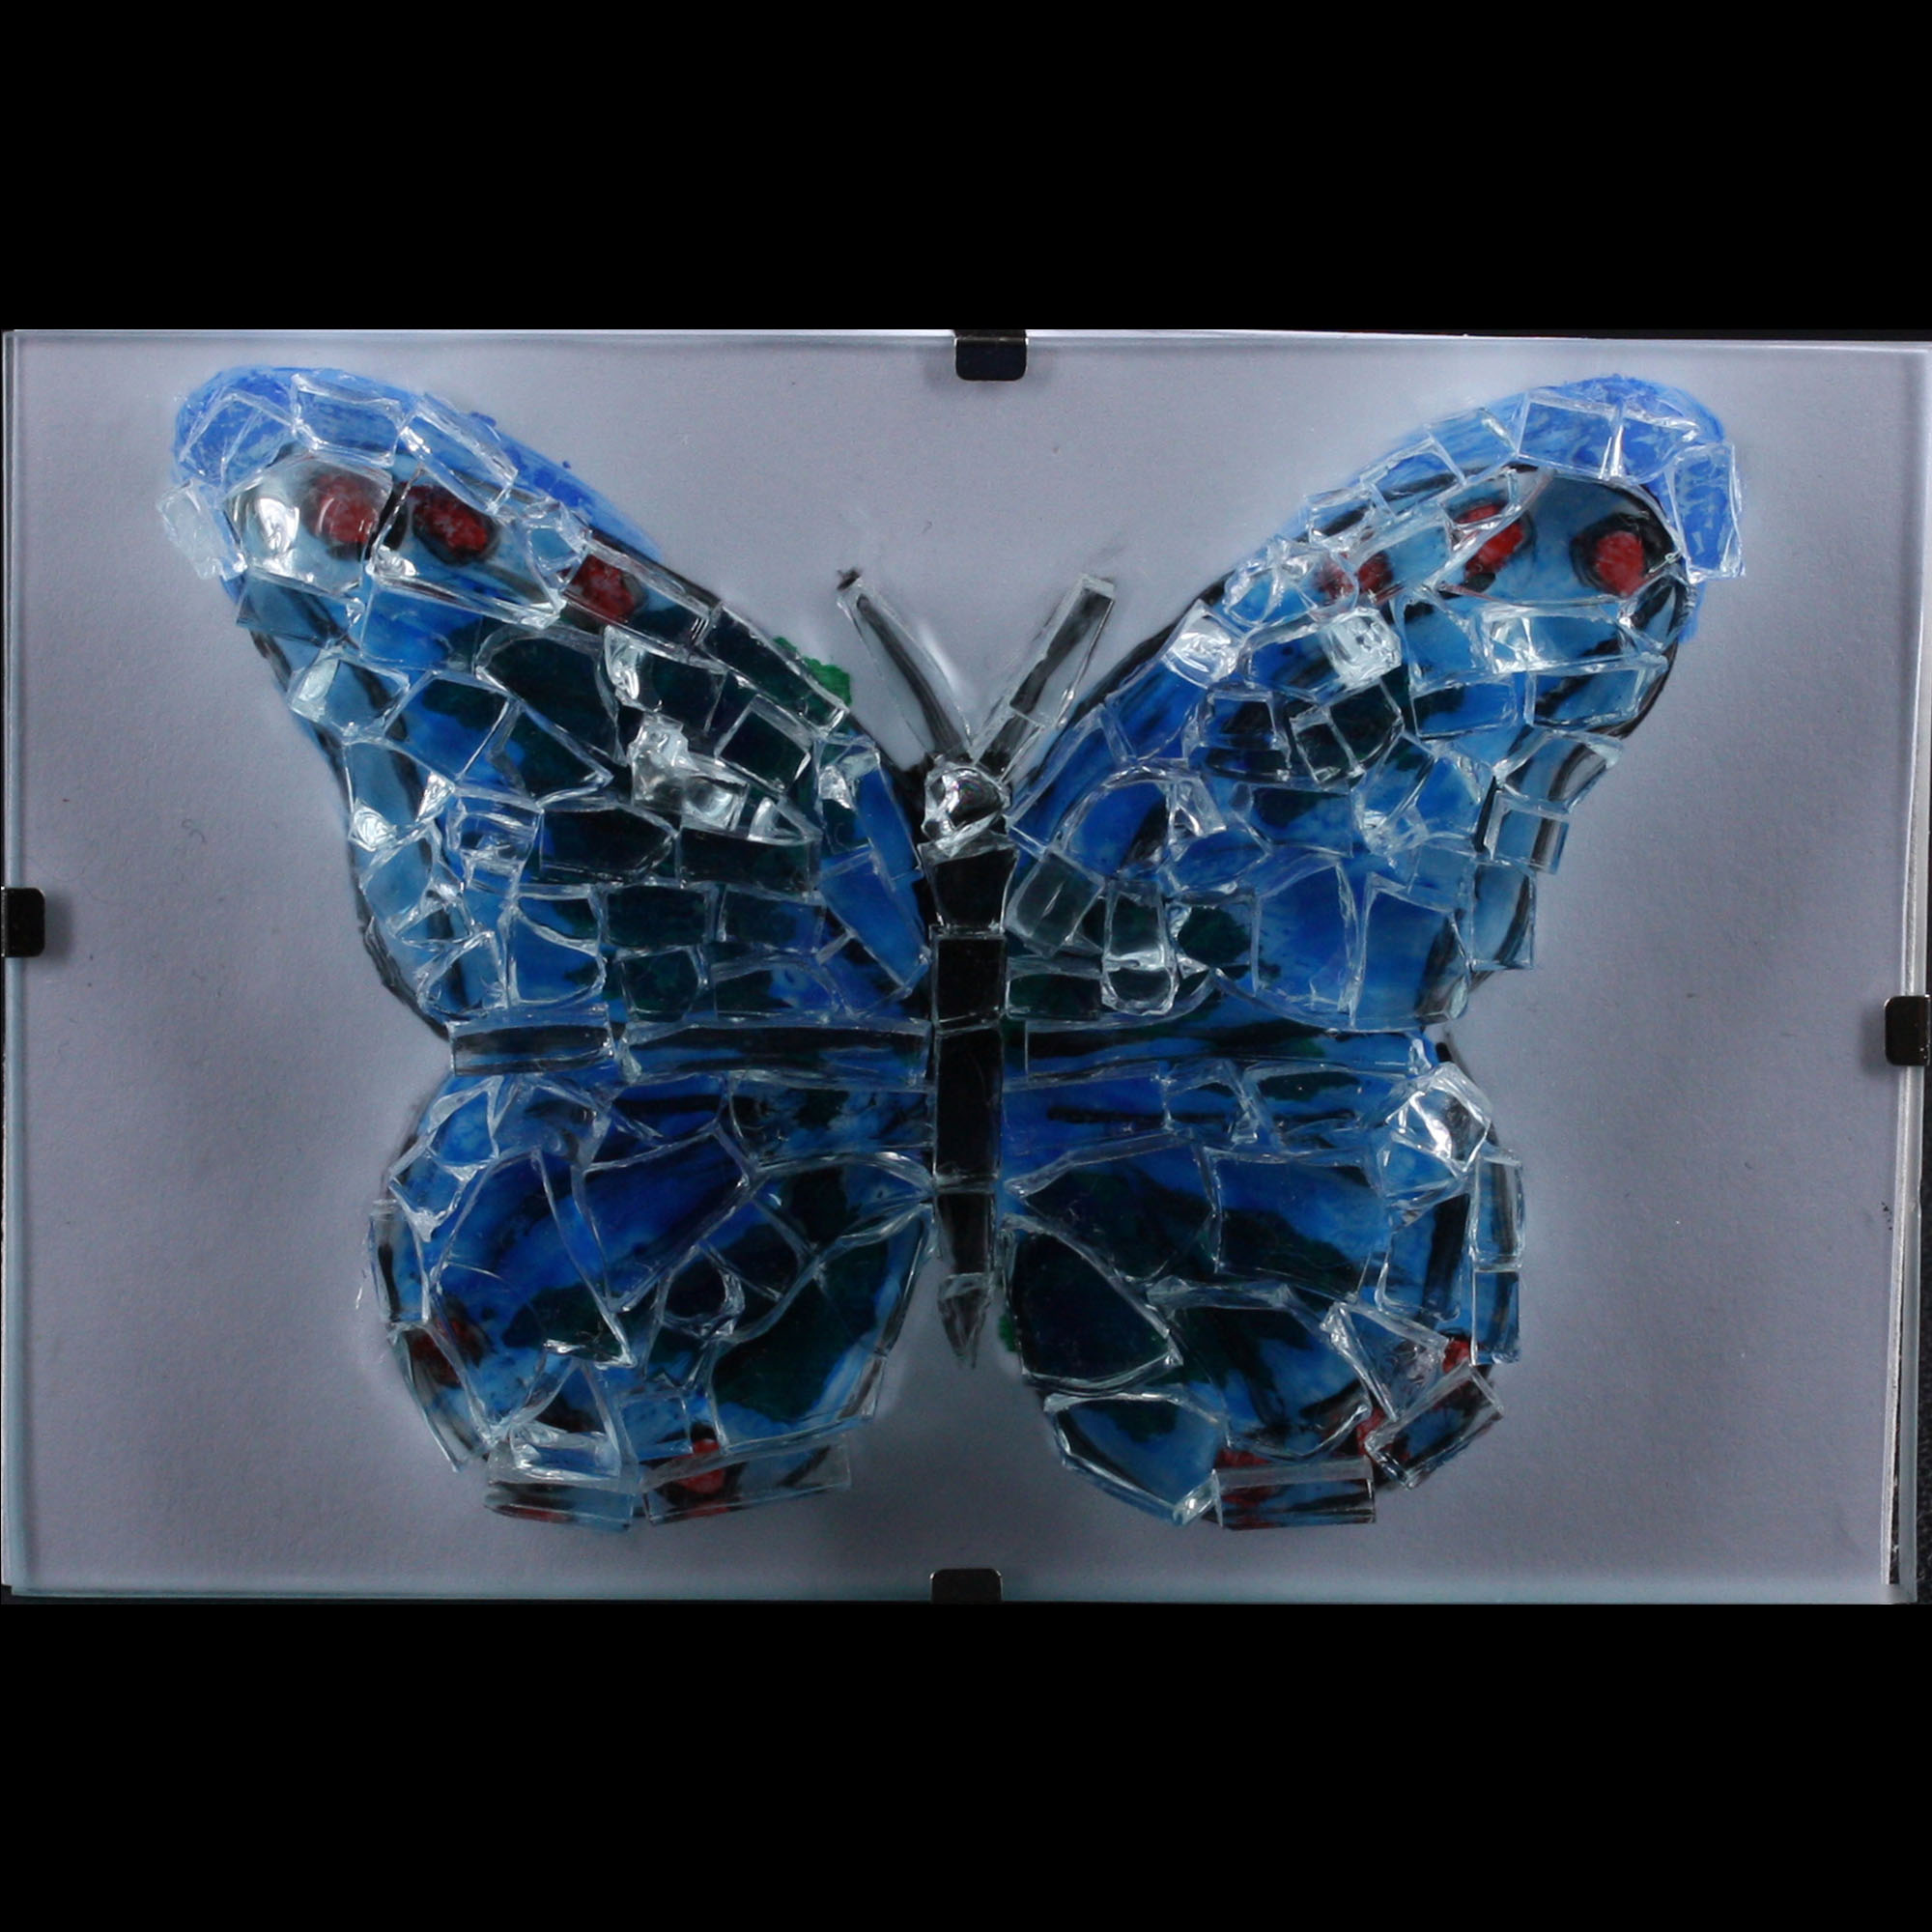 vlinder workshop galerie glas verf marielle braanker